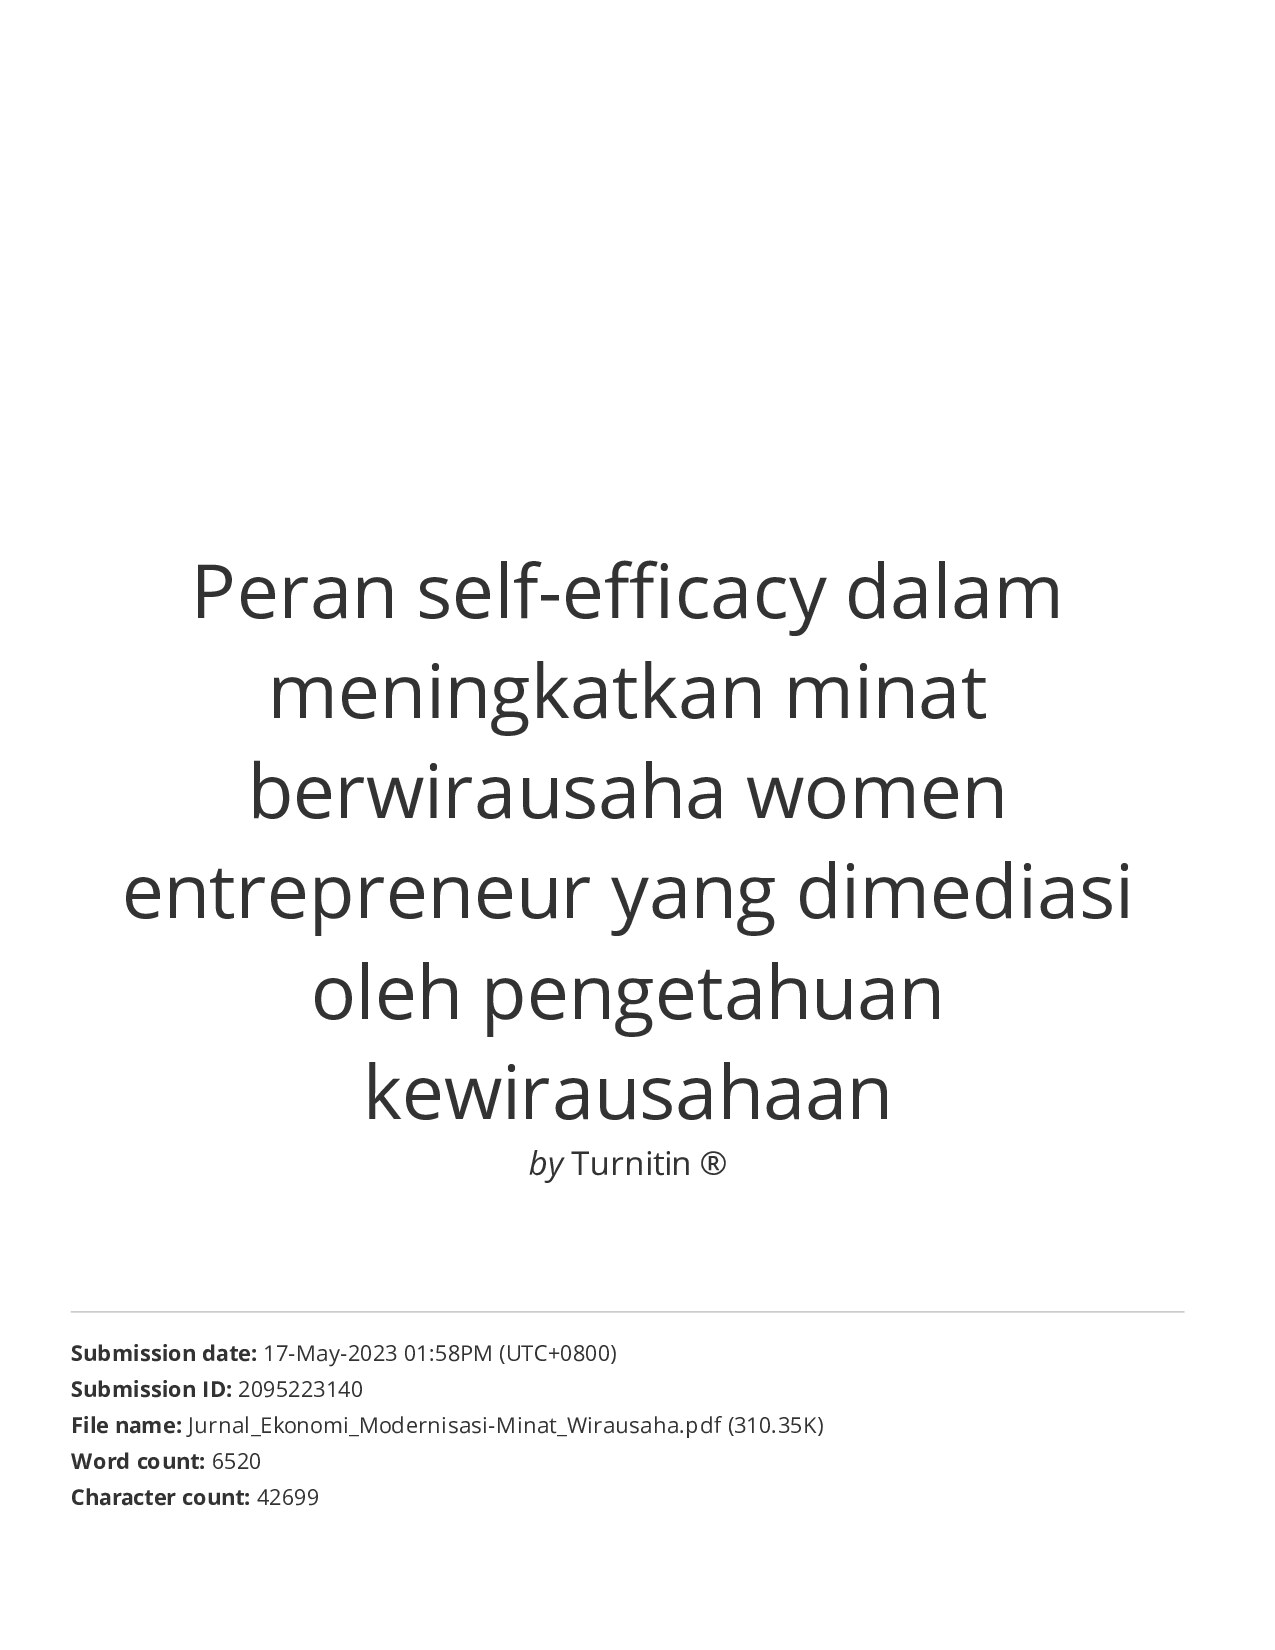 Peran self-efficacy dalam meningkatkan minat berwirausaha women entrepreneur yang dimediasi oleh pengetahuan kewirausahaan